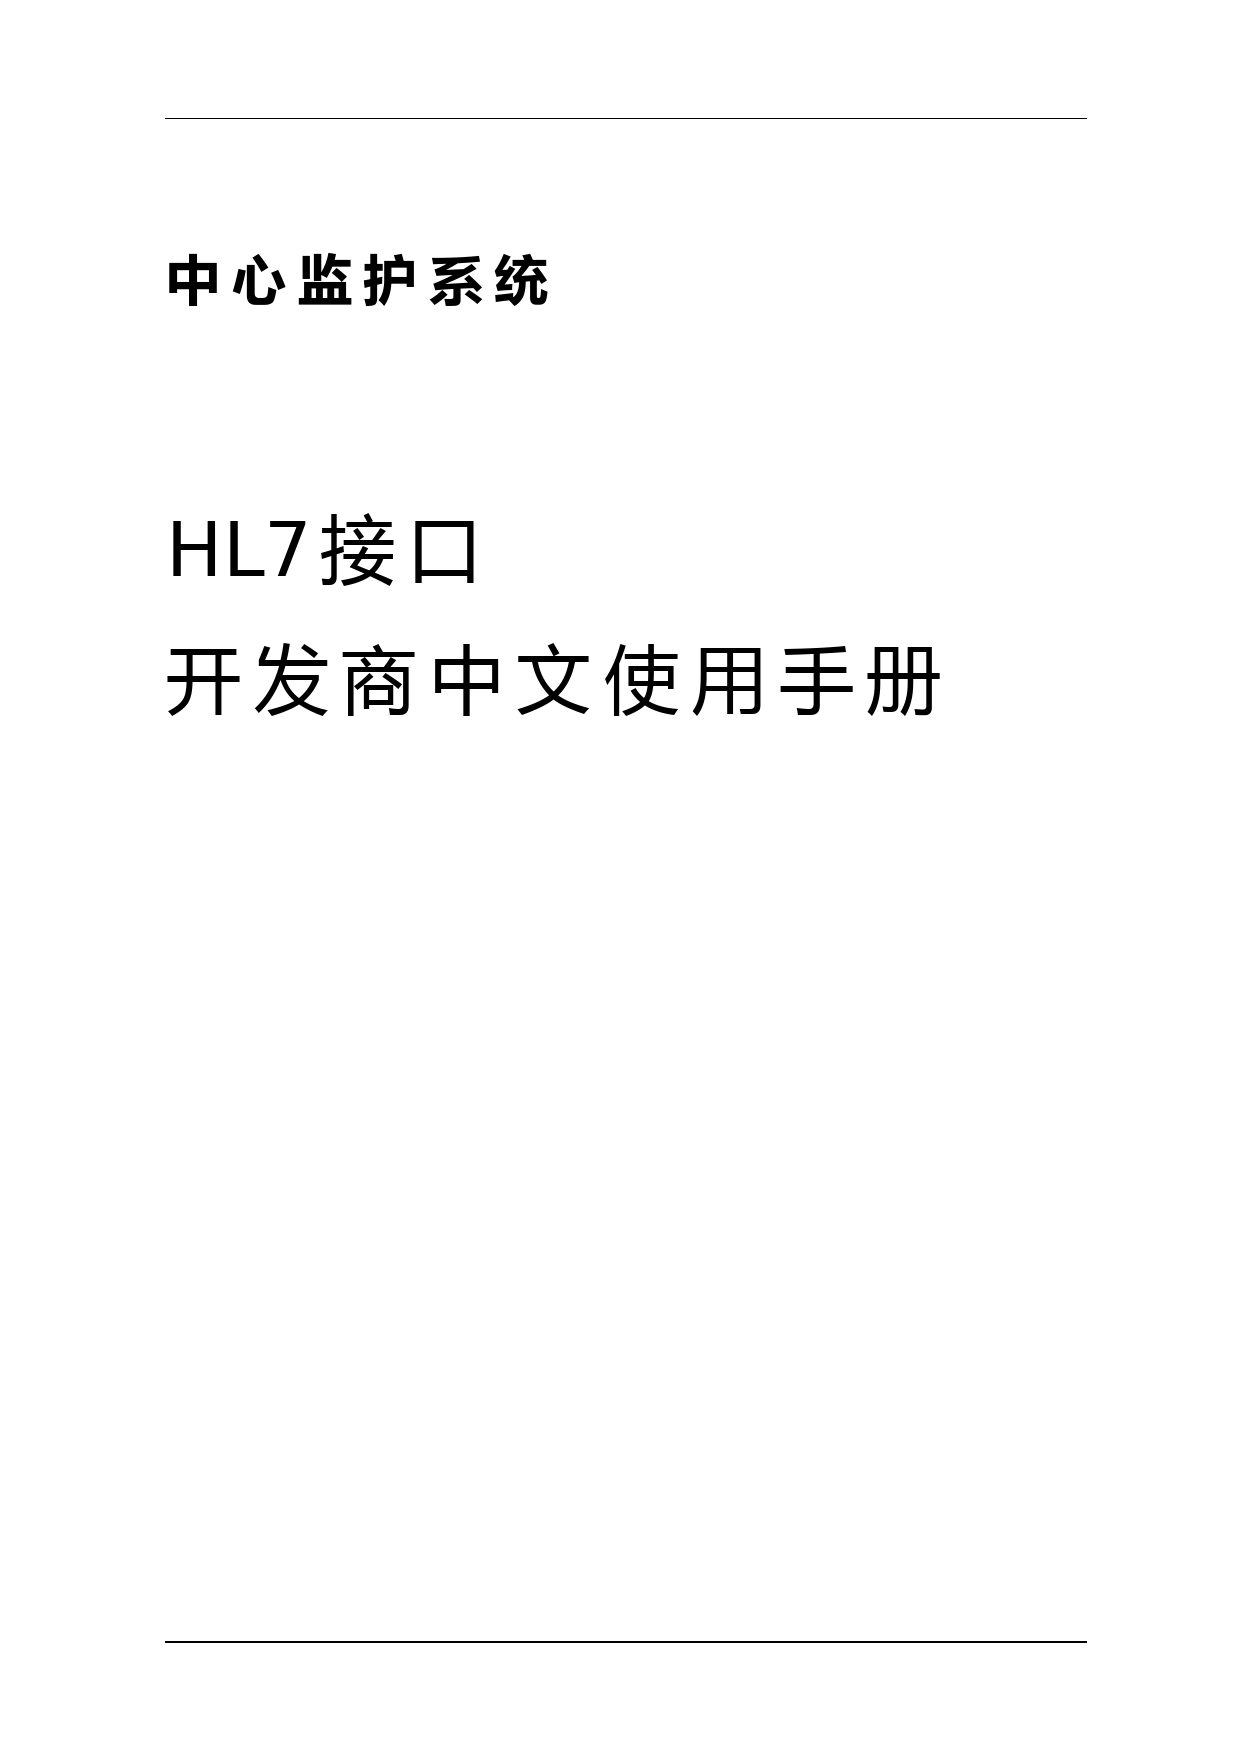 hl7接口开发商中文使用手册